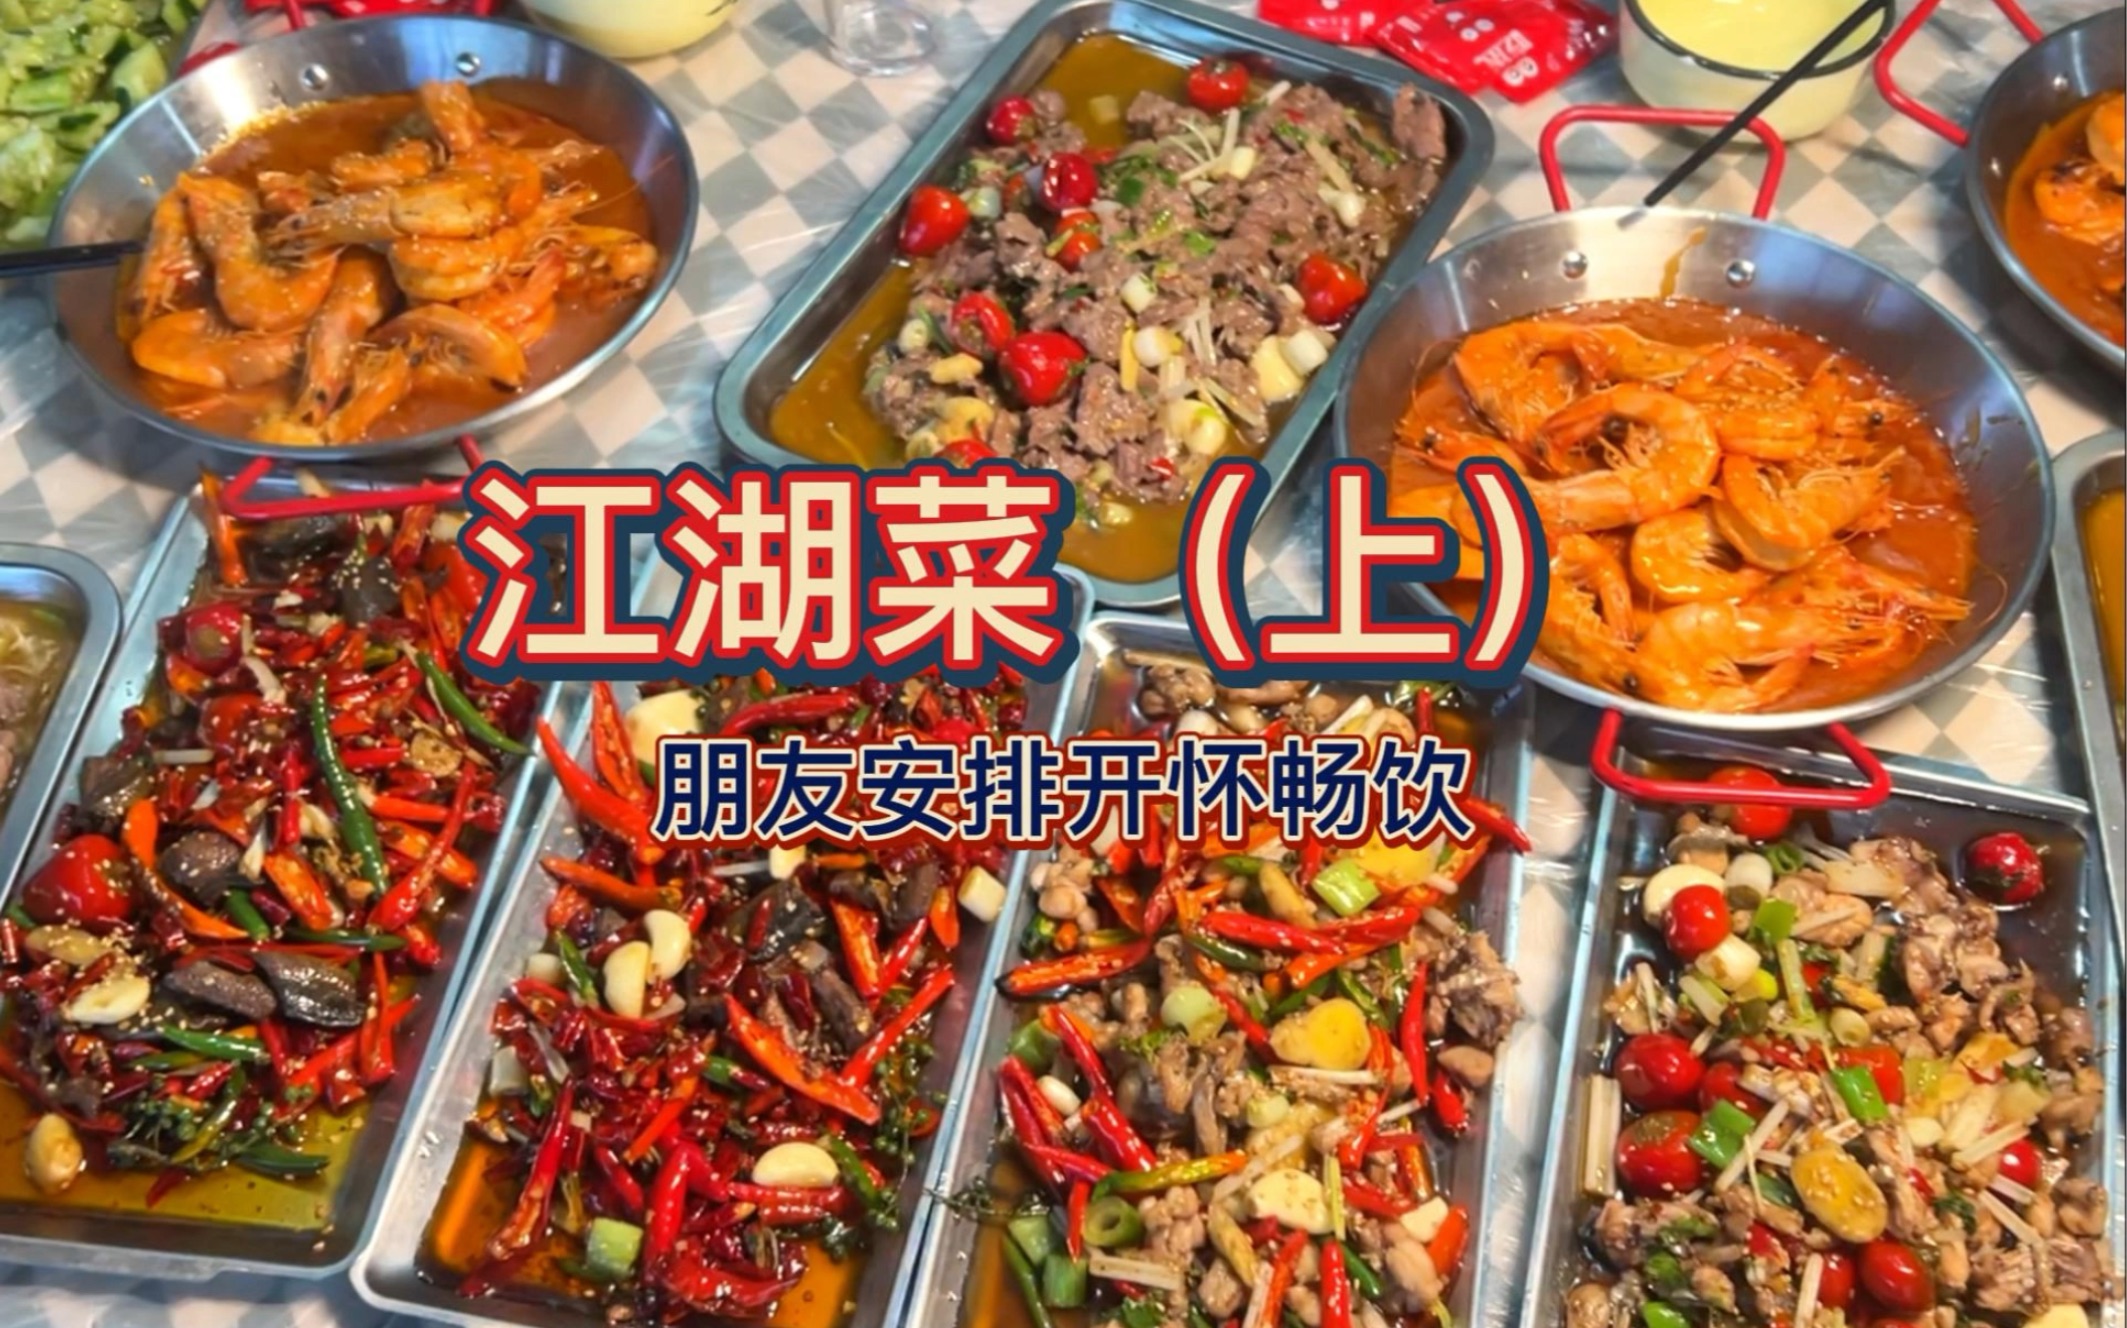 特色江湖菜，吊龙和虾味道一绝！下集更多精彩